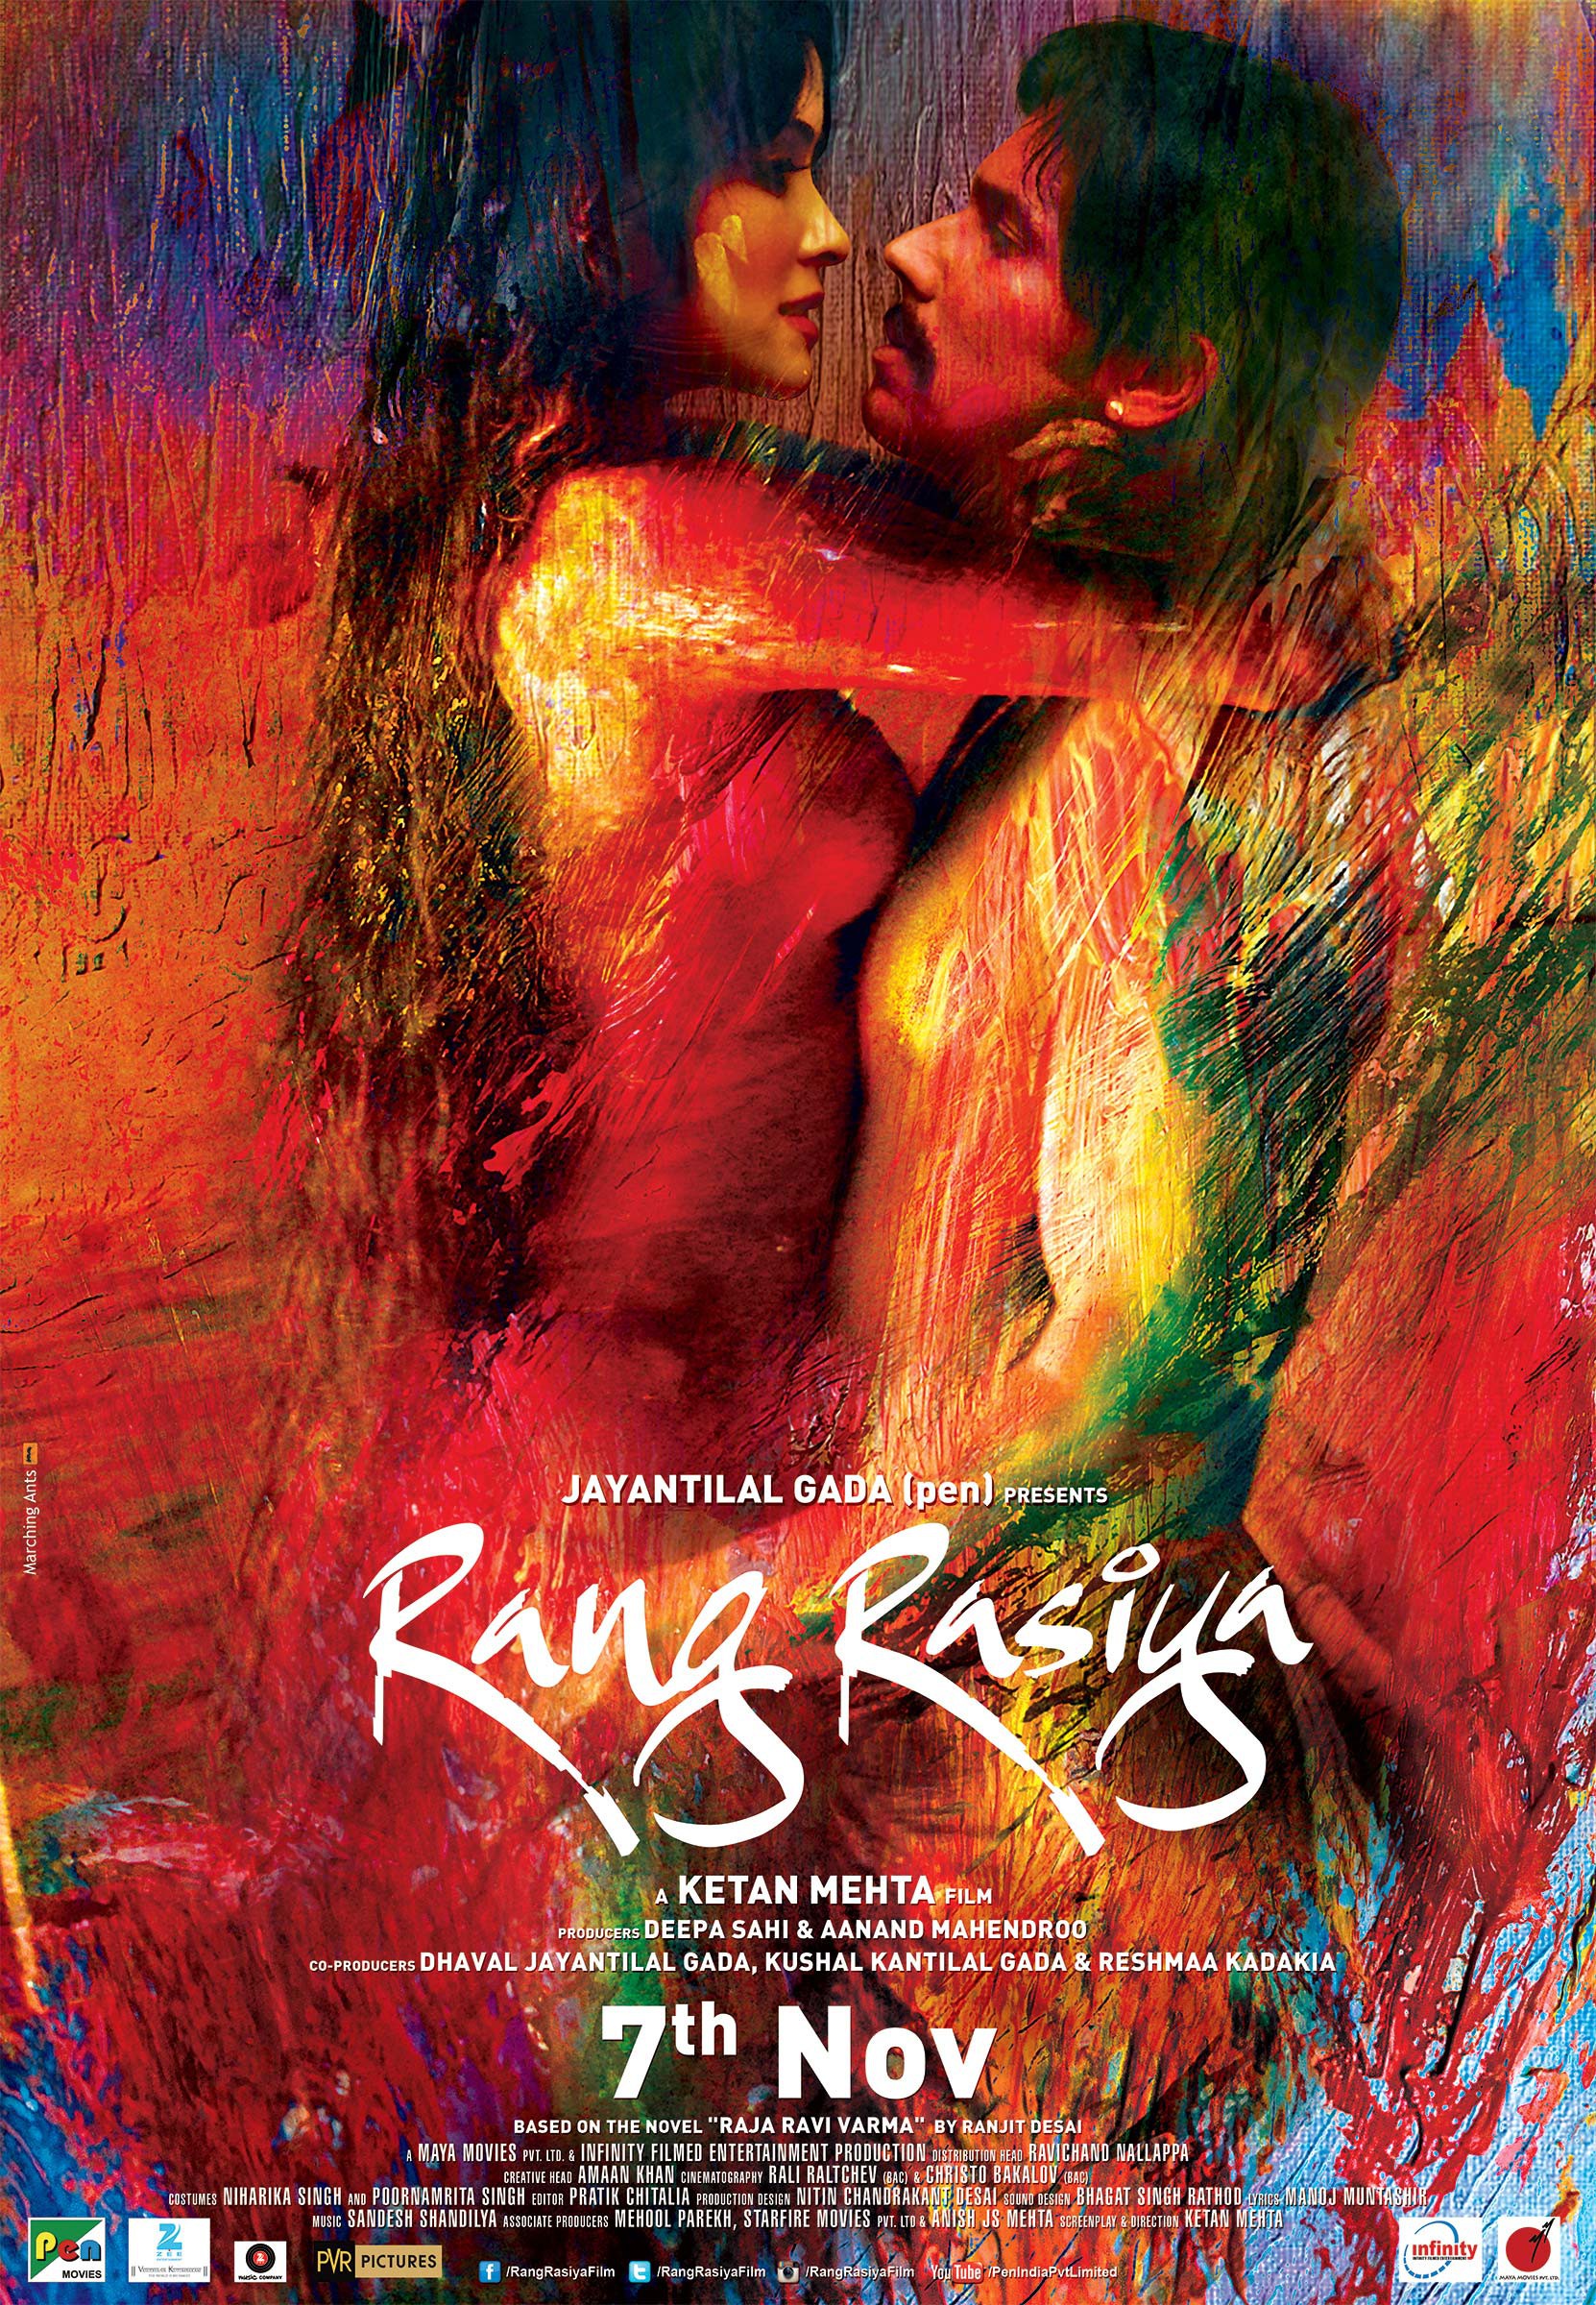 Mega Sized Movie Poster Image for Rang rasiya (#7 of 9)